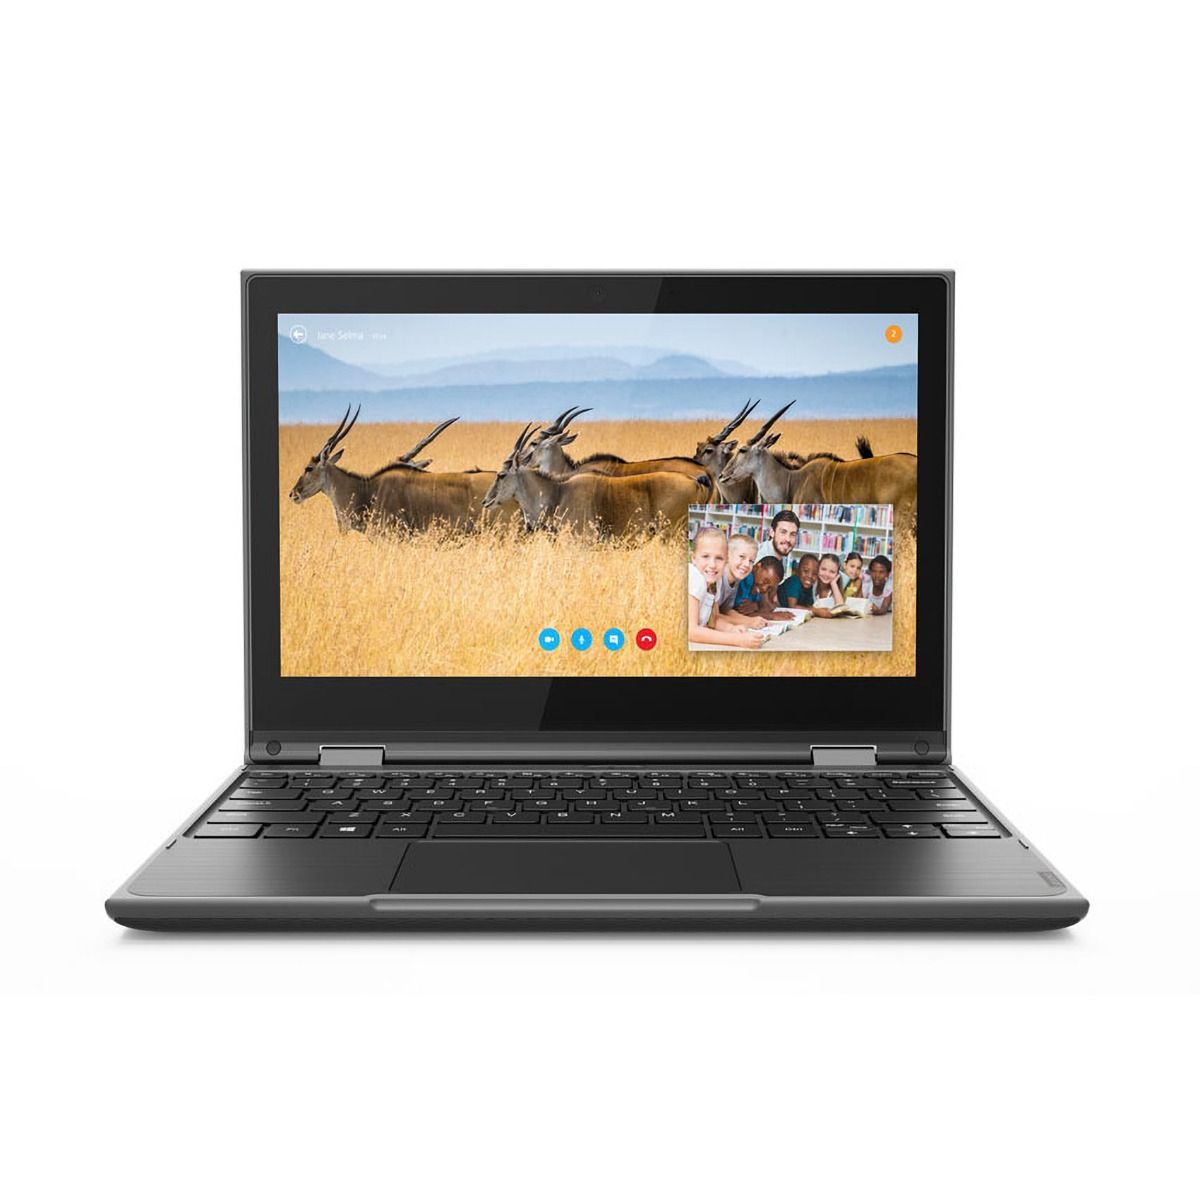 Lenovo 300e 2nd Gen Laptop 11.6" HD Touch Intel Celeron N4120 4GB 128GB SSD